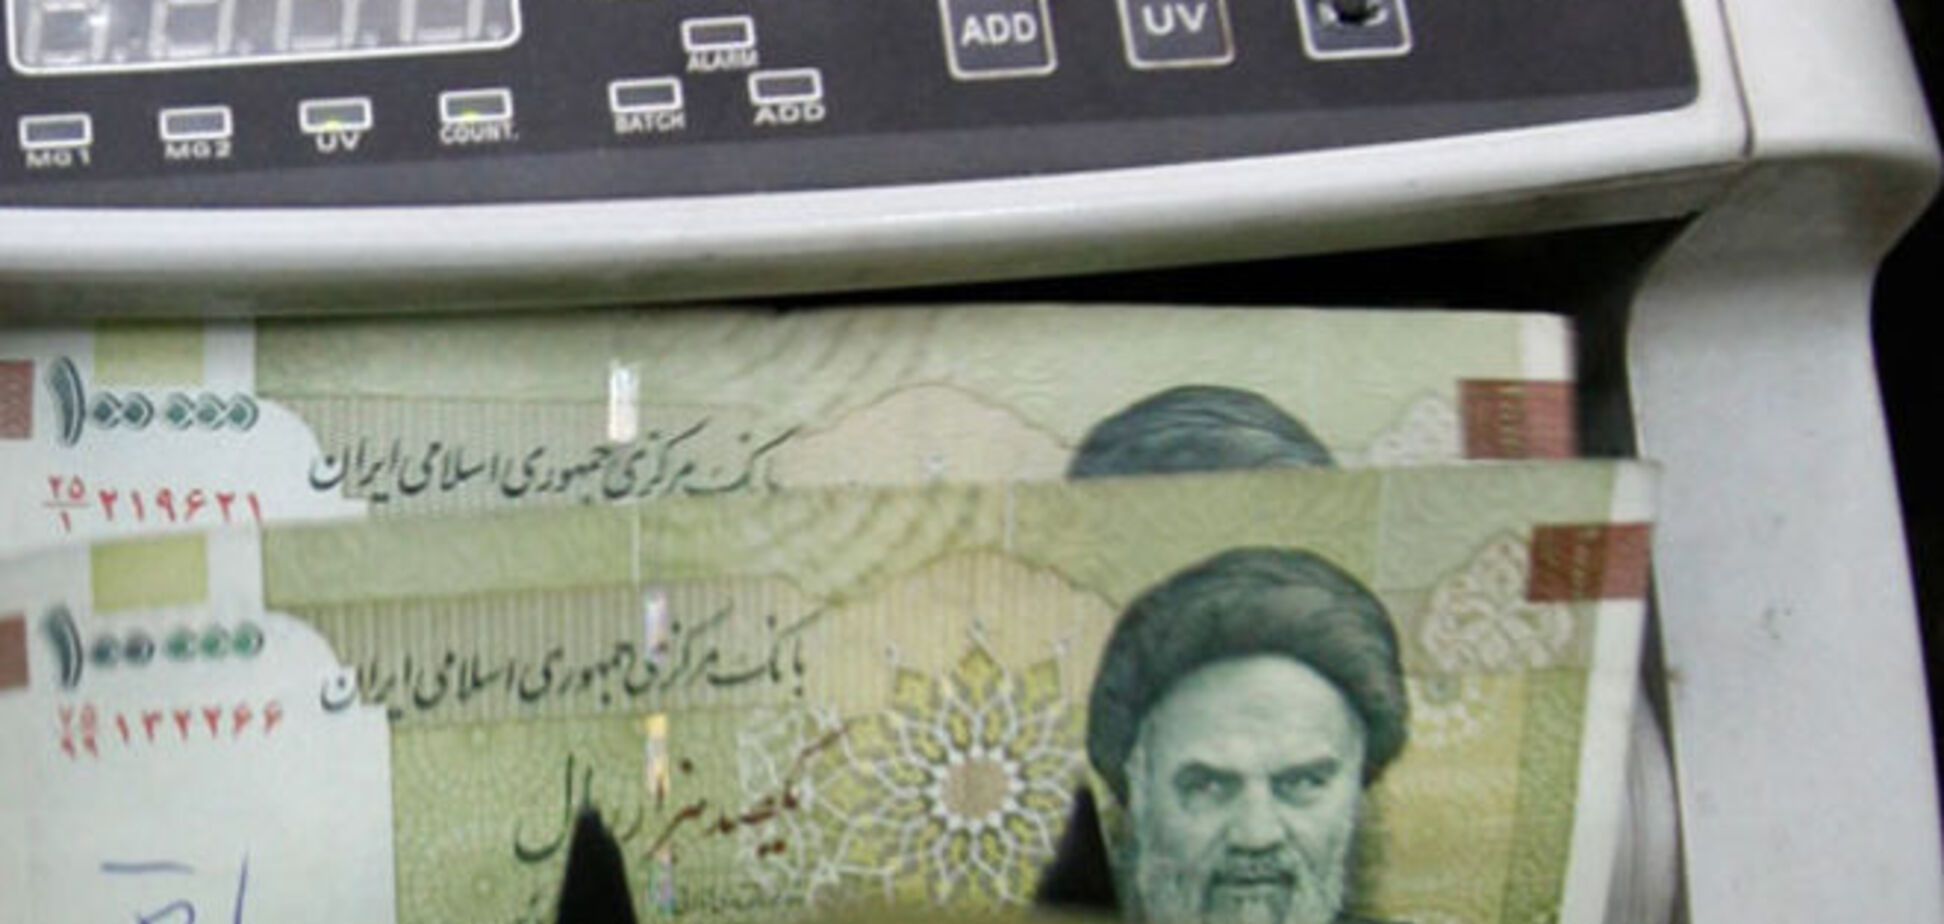 Життя після санкцій: перший іранський банк повернули в міжнародну міжбанківську систему SWIFT